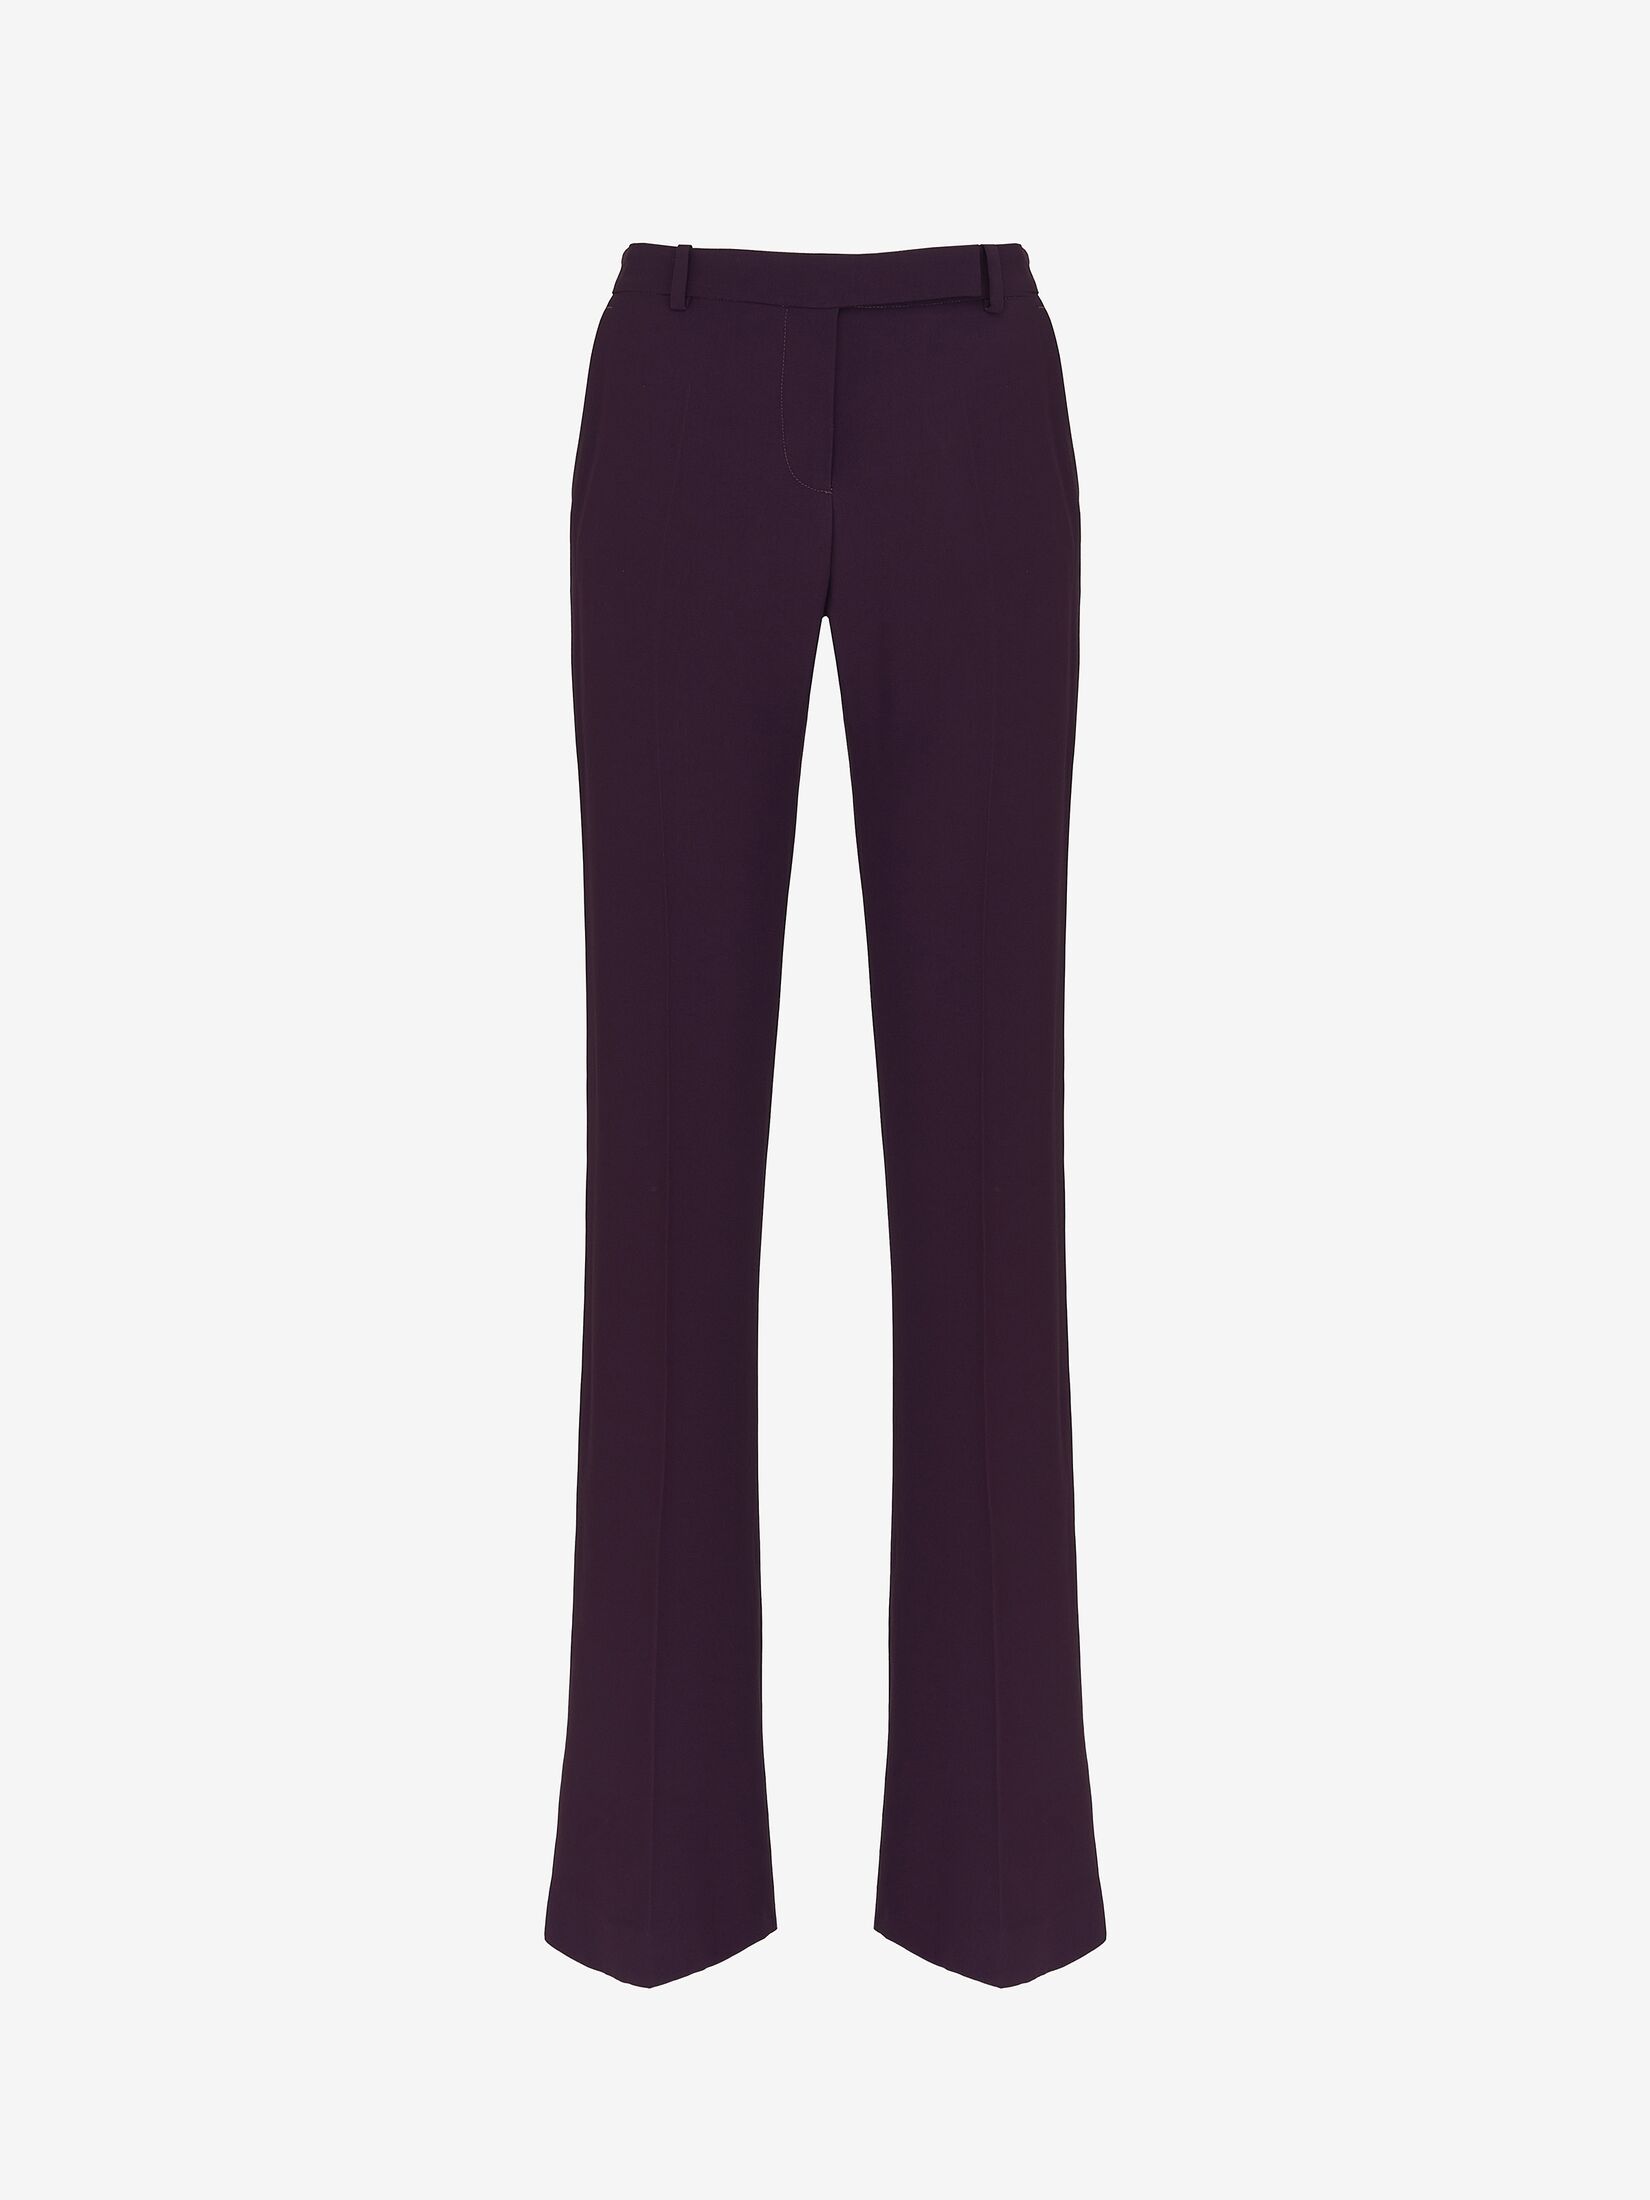 Lavender plus size cigarette pencil pants & trousers for women xxxxl to  xxxxxl.